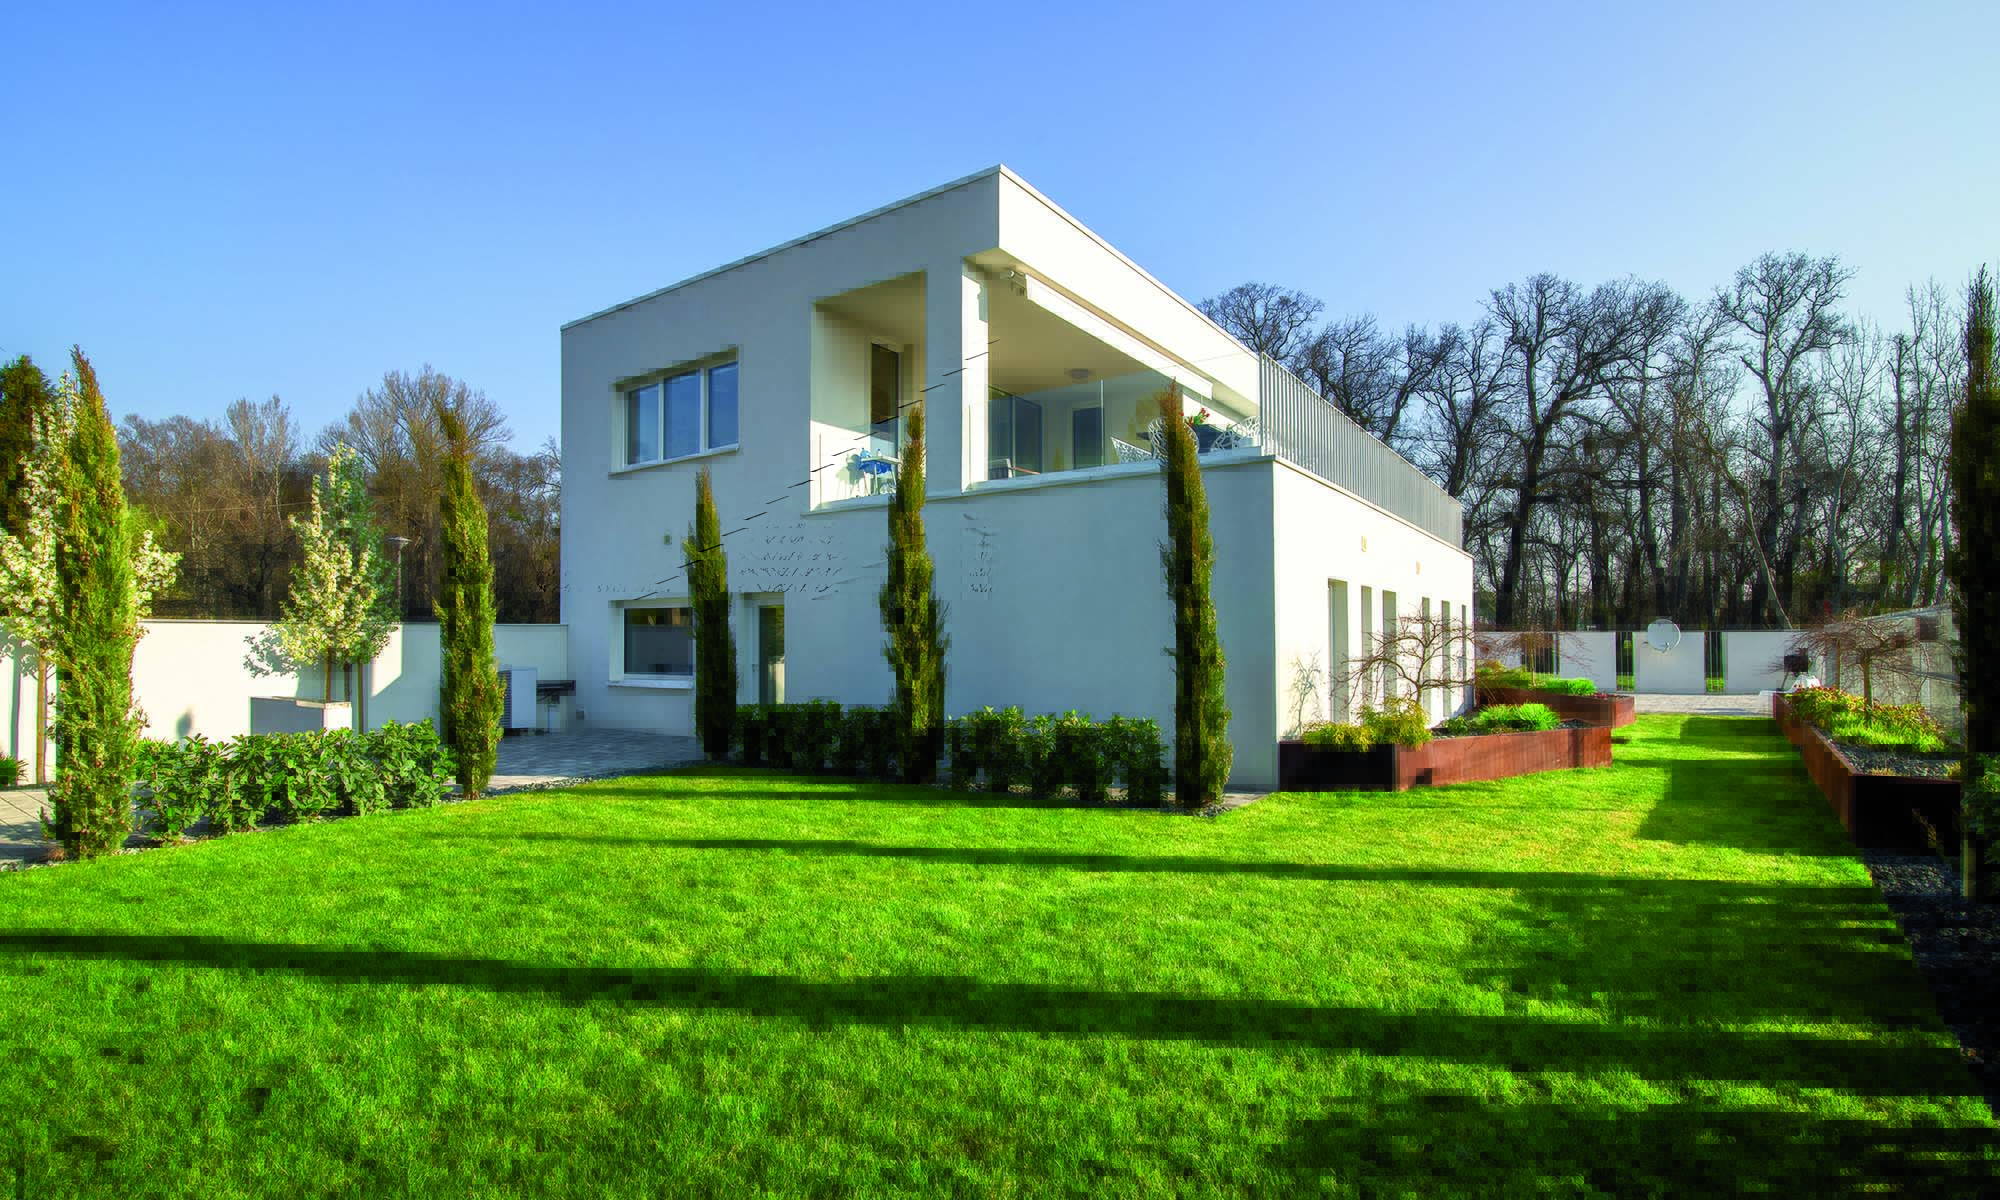 Esempio di applicazione di Mapetherm in residenza privata (Ungheria): Le facciate dell’abitazione sono state isolate termicamente grazie al sistema MAPETHERM.